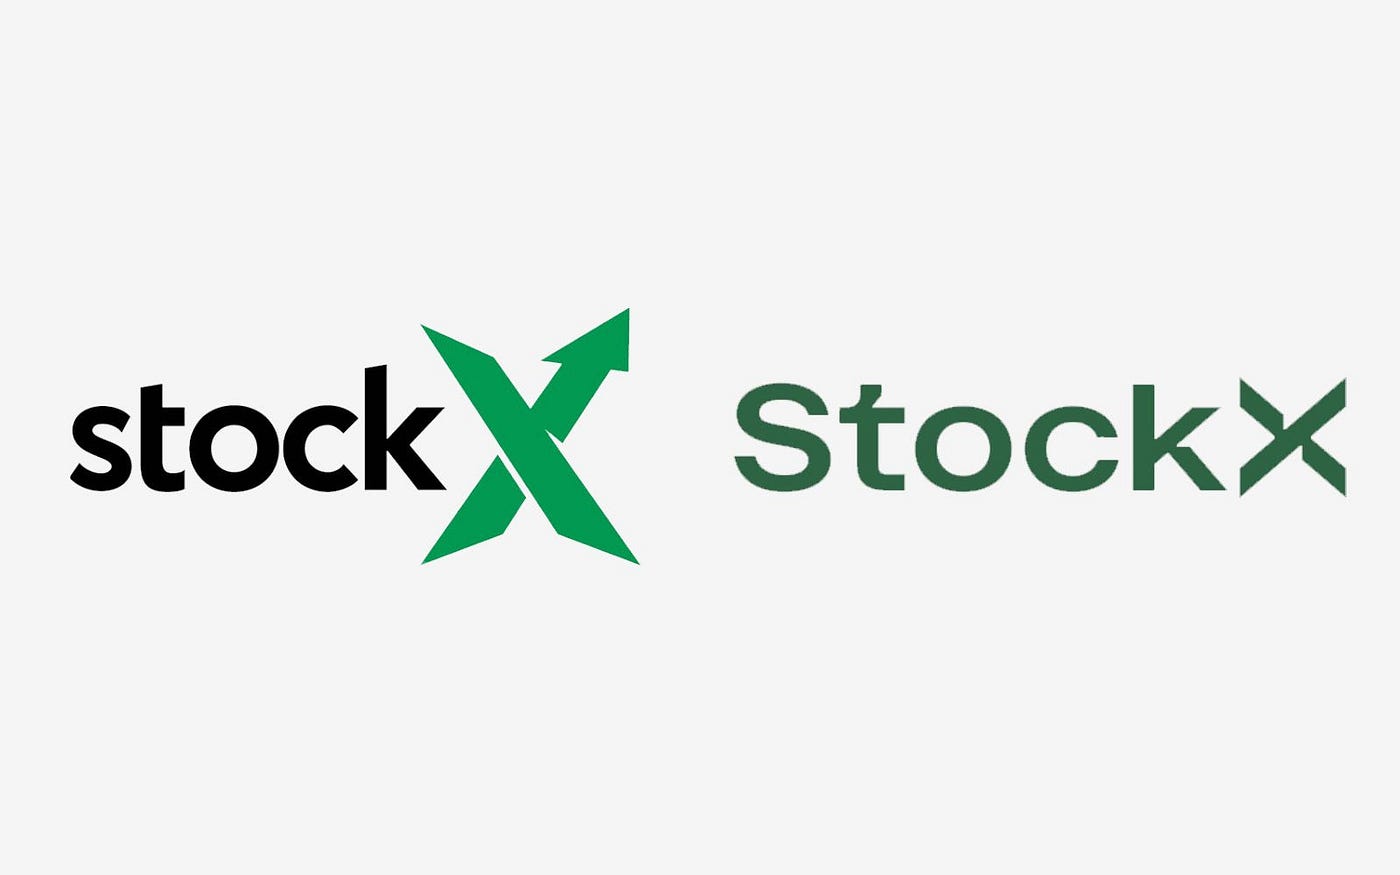 How to Buy - StockX